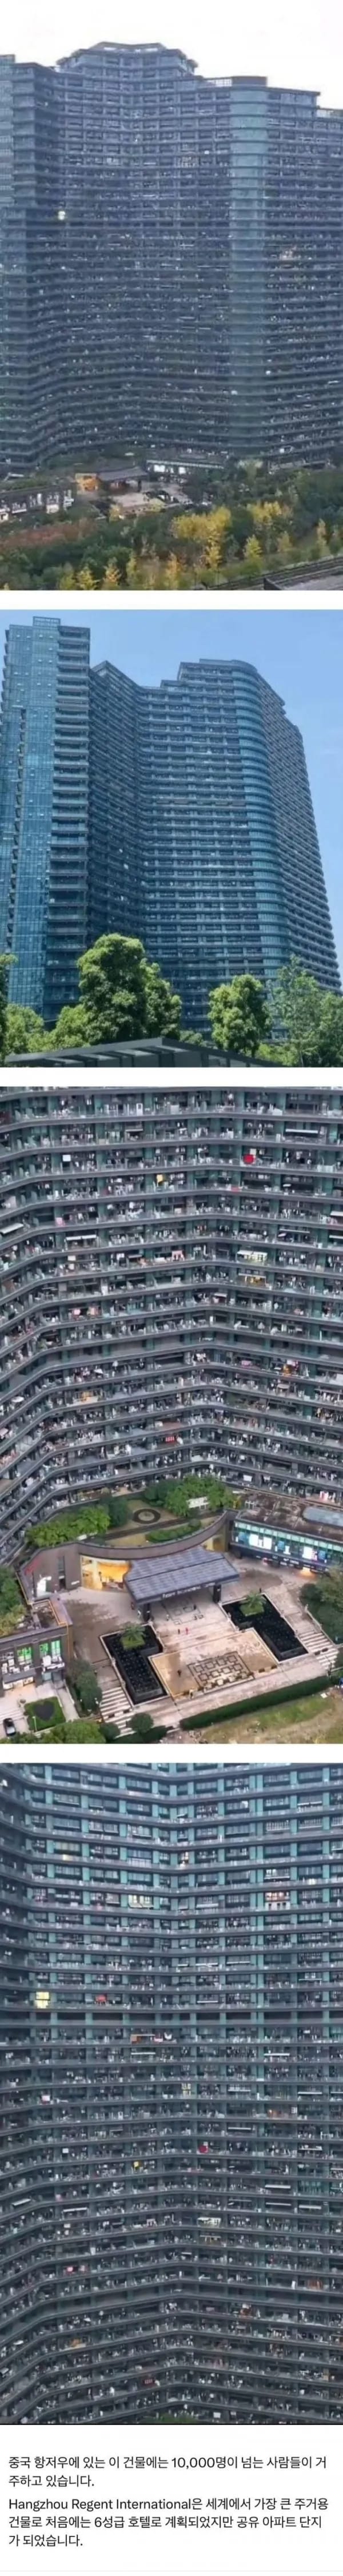 중국 항저우 아파트 크기 레전드 ㅎㄷㄷㄷ